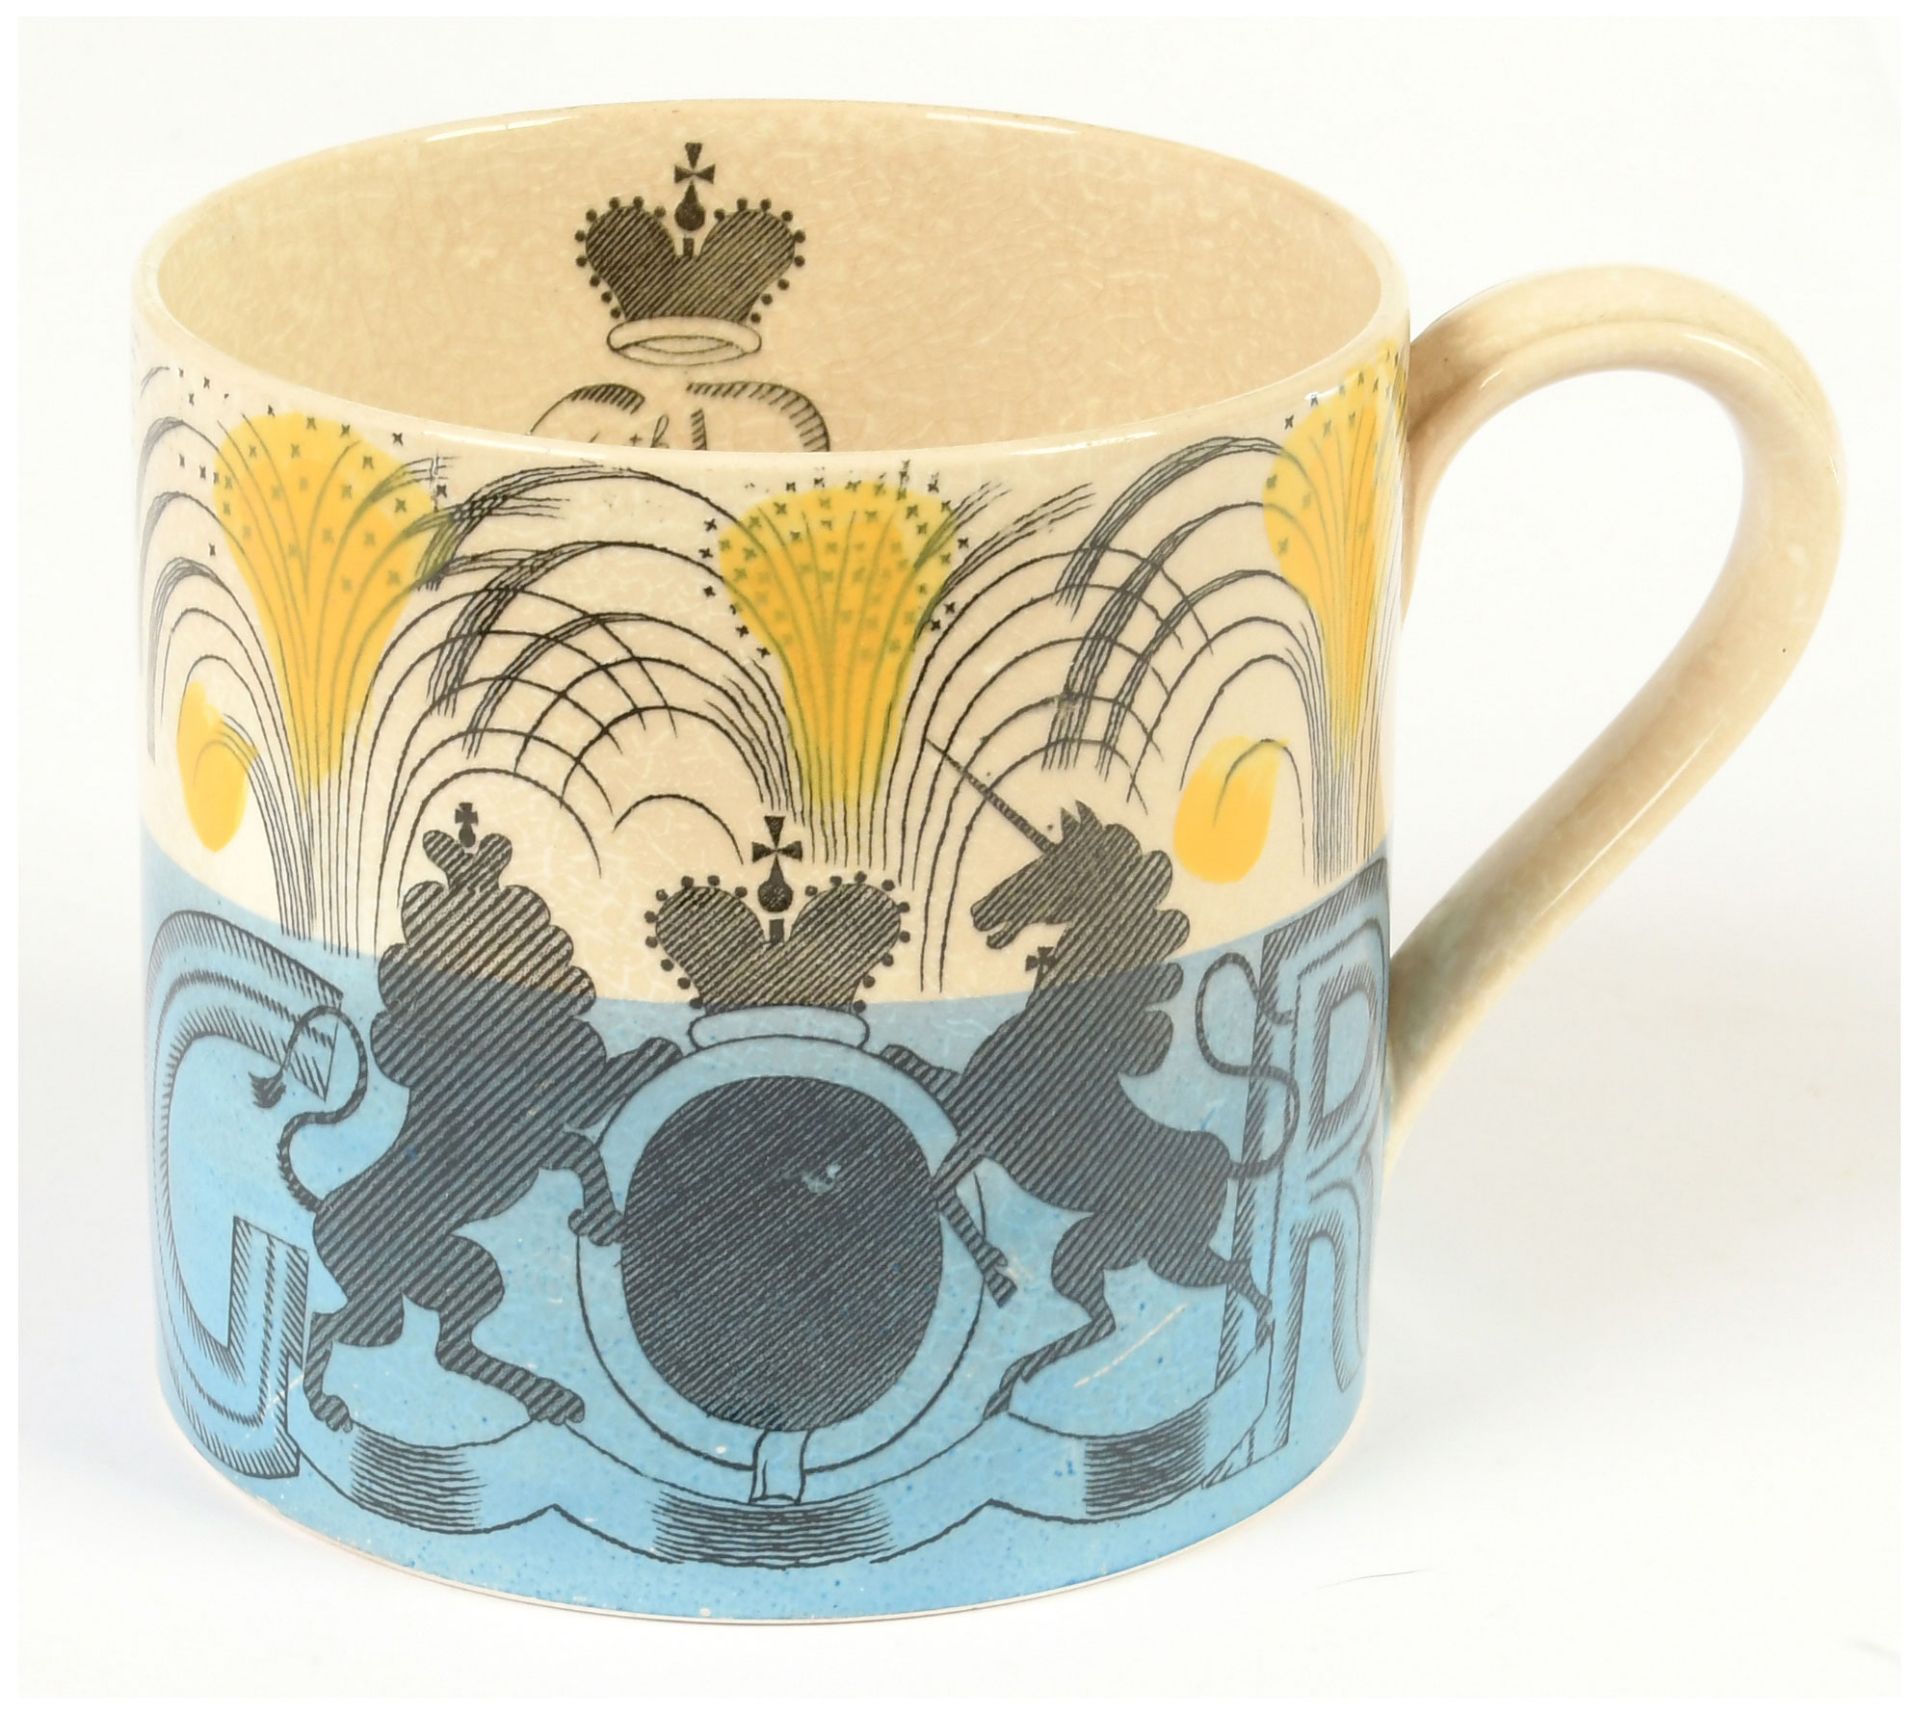 Wedgewood commemorative mug designed by Eric - Image 7 of 7